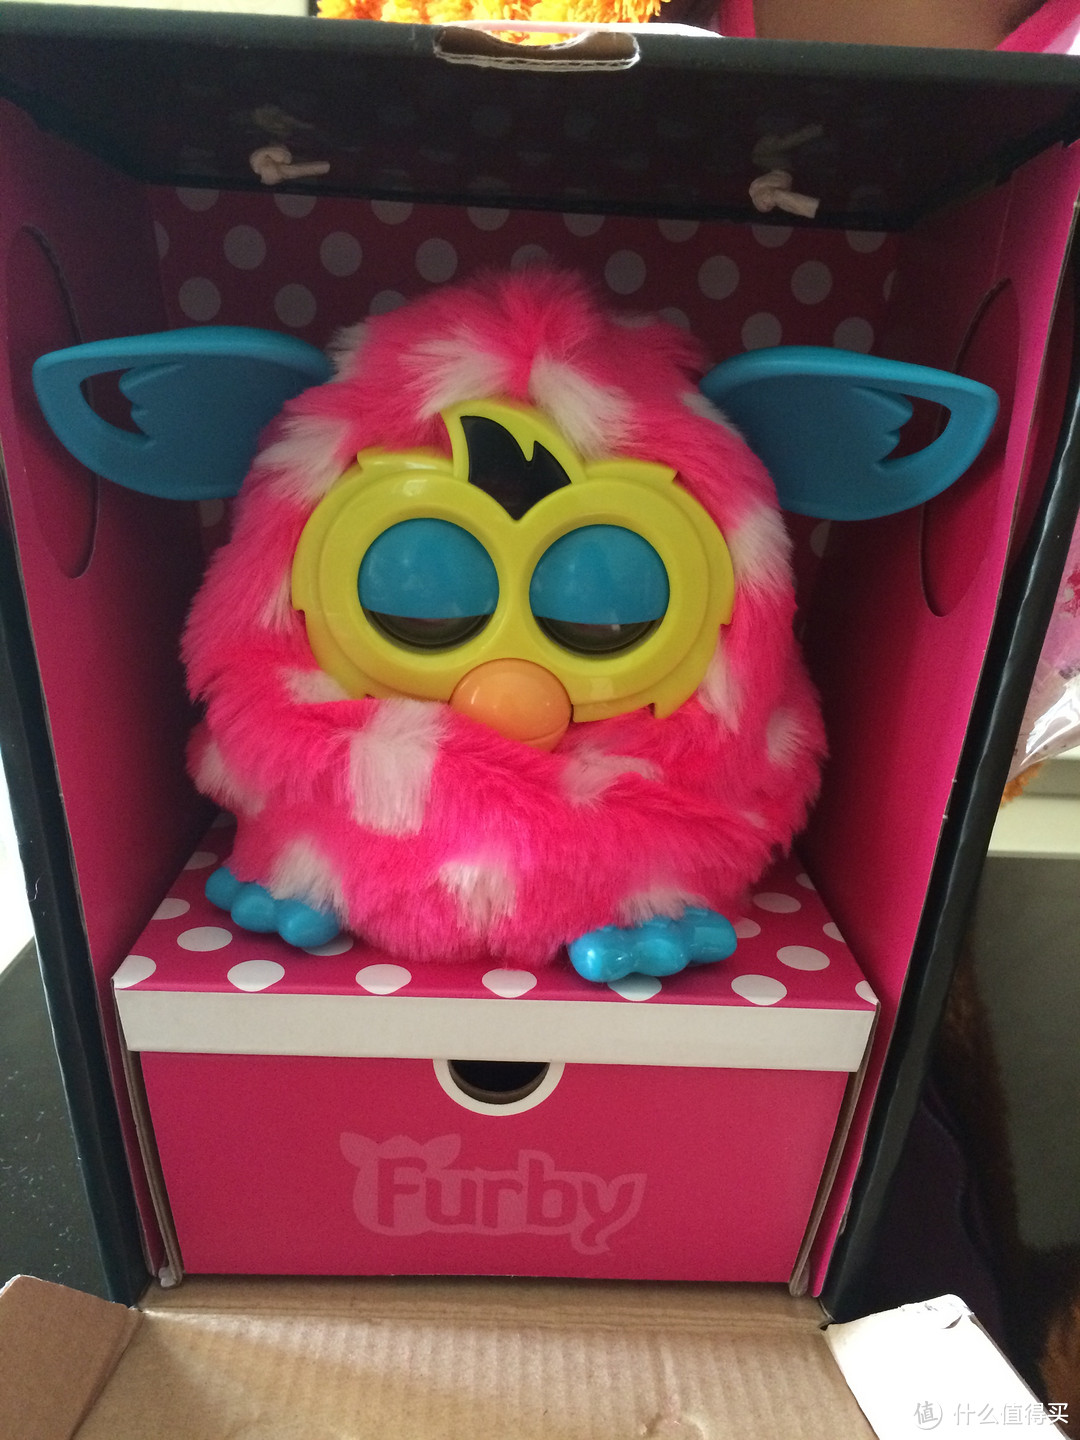 给孩子的圣诞礼物：Furby Boom 菲比精灵 智能互动宠物